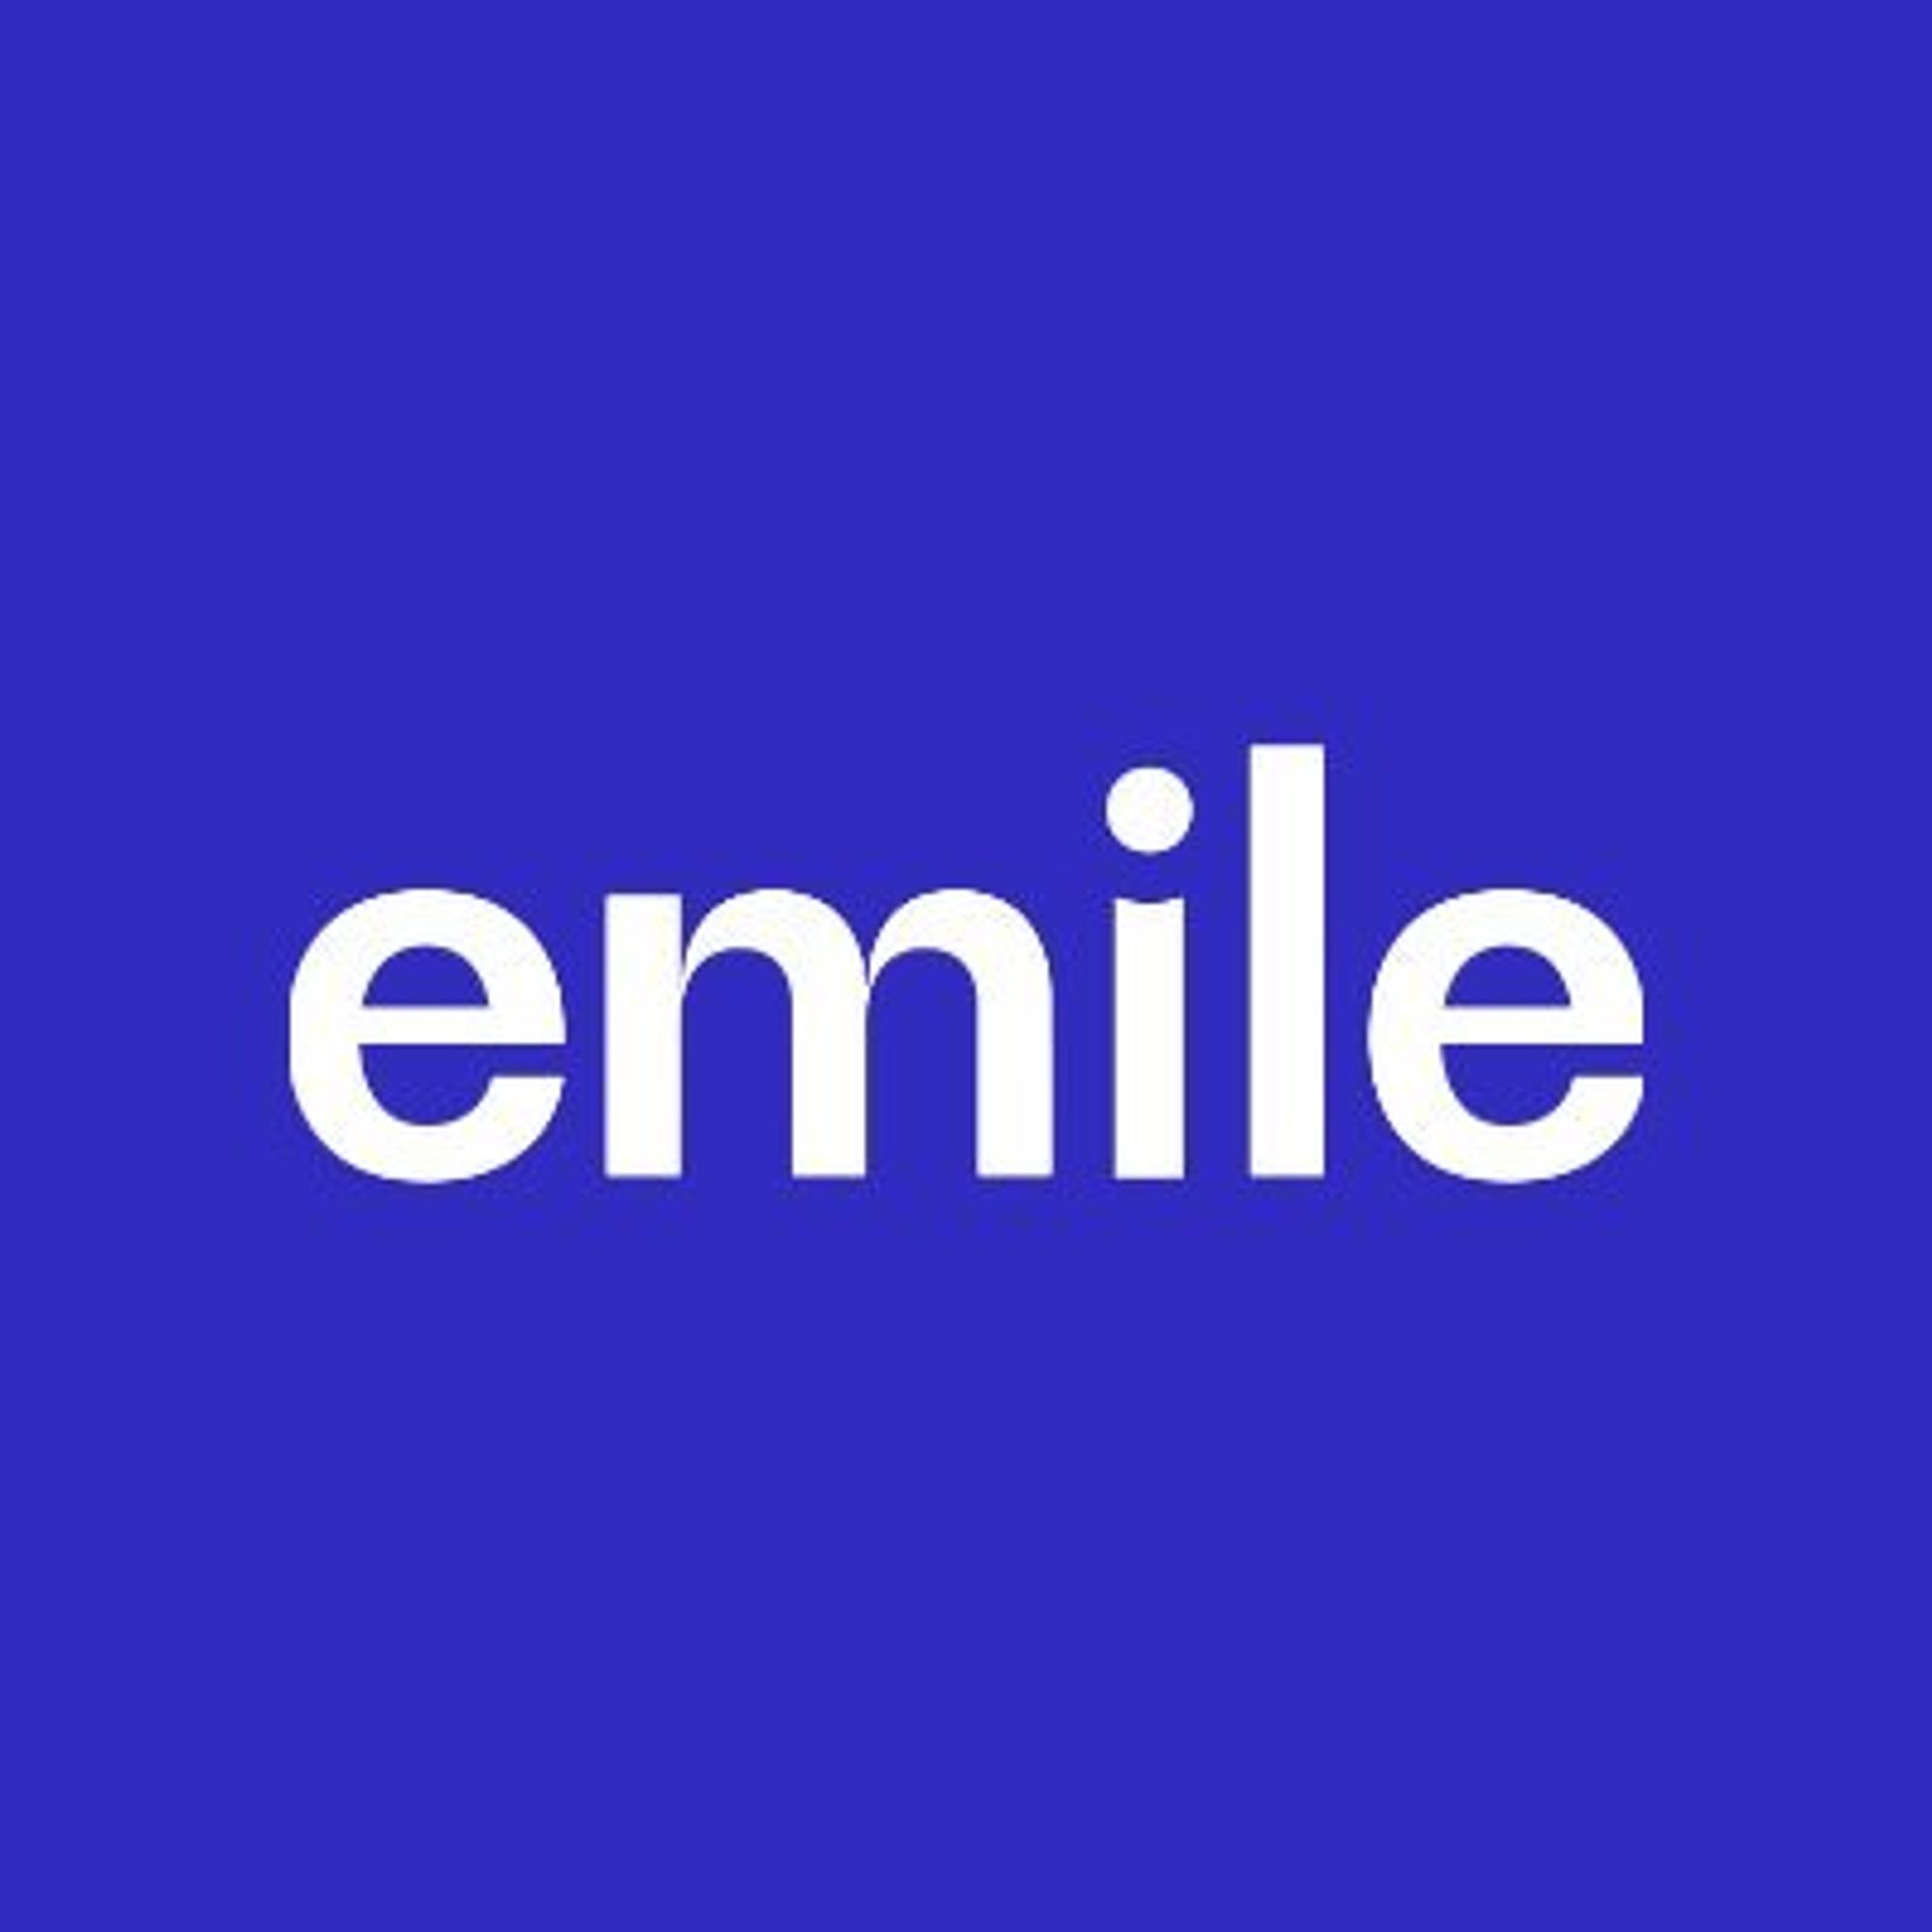 Emile Learning